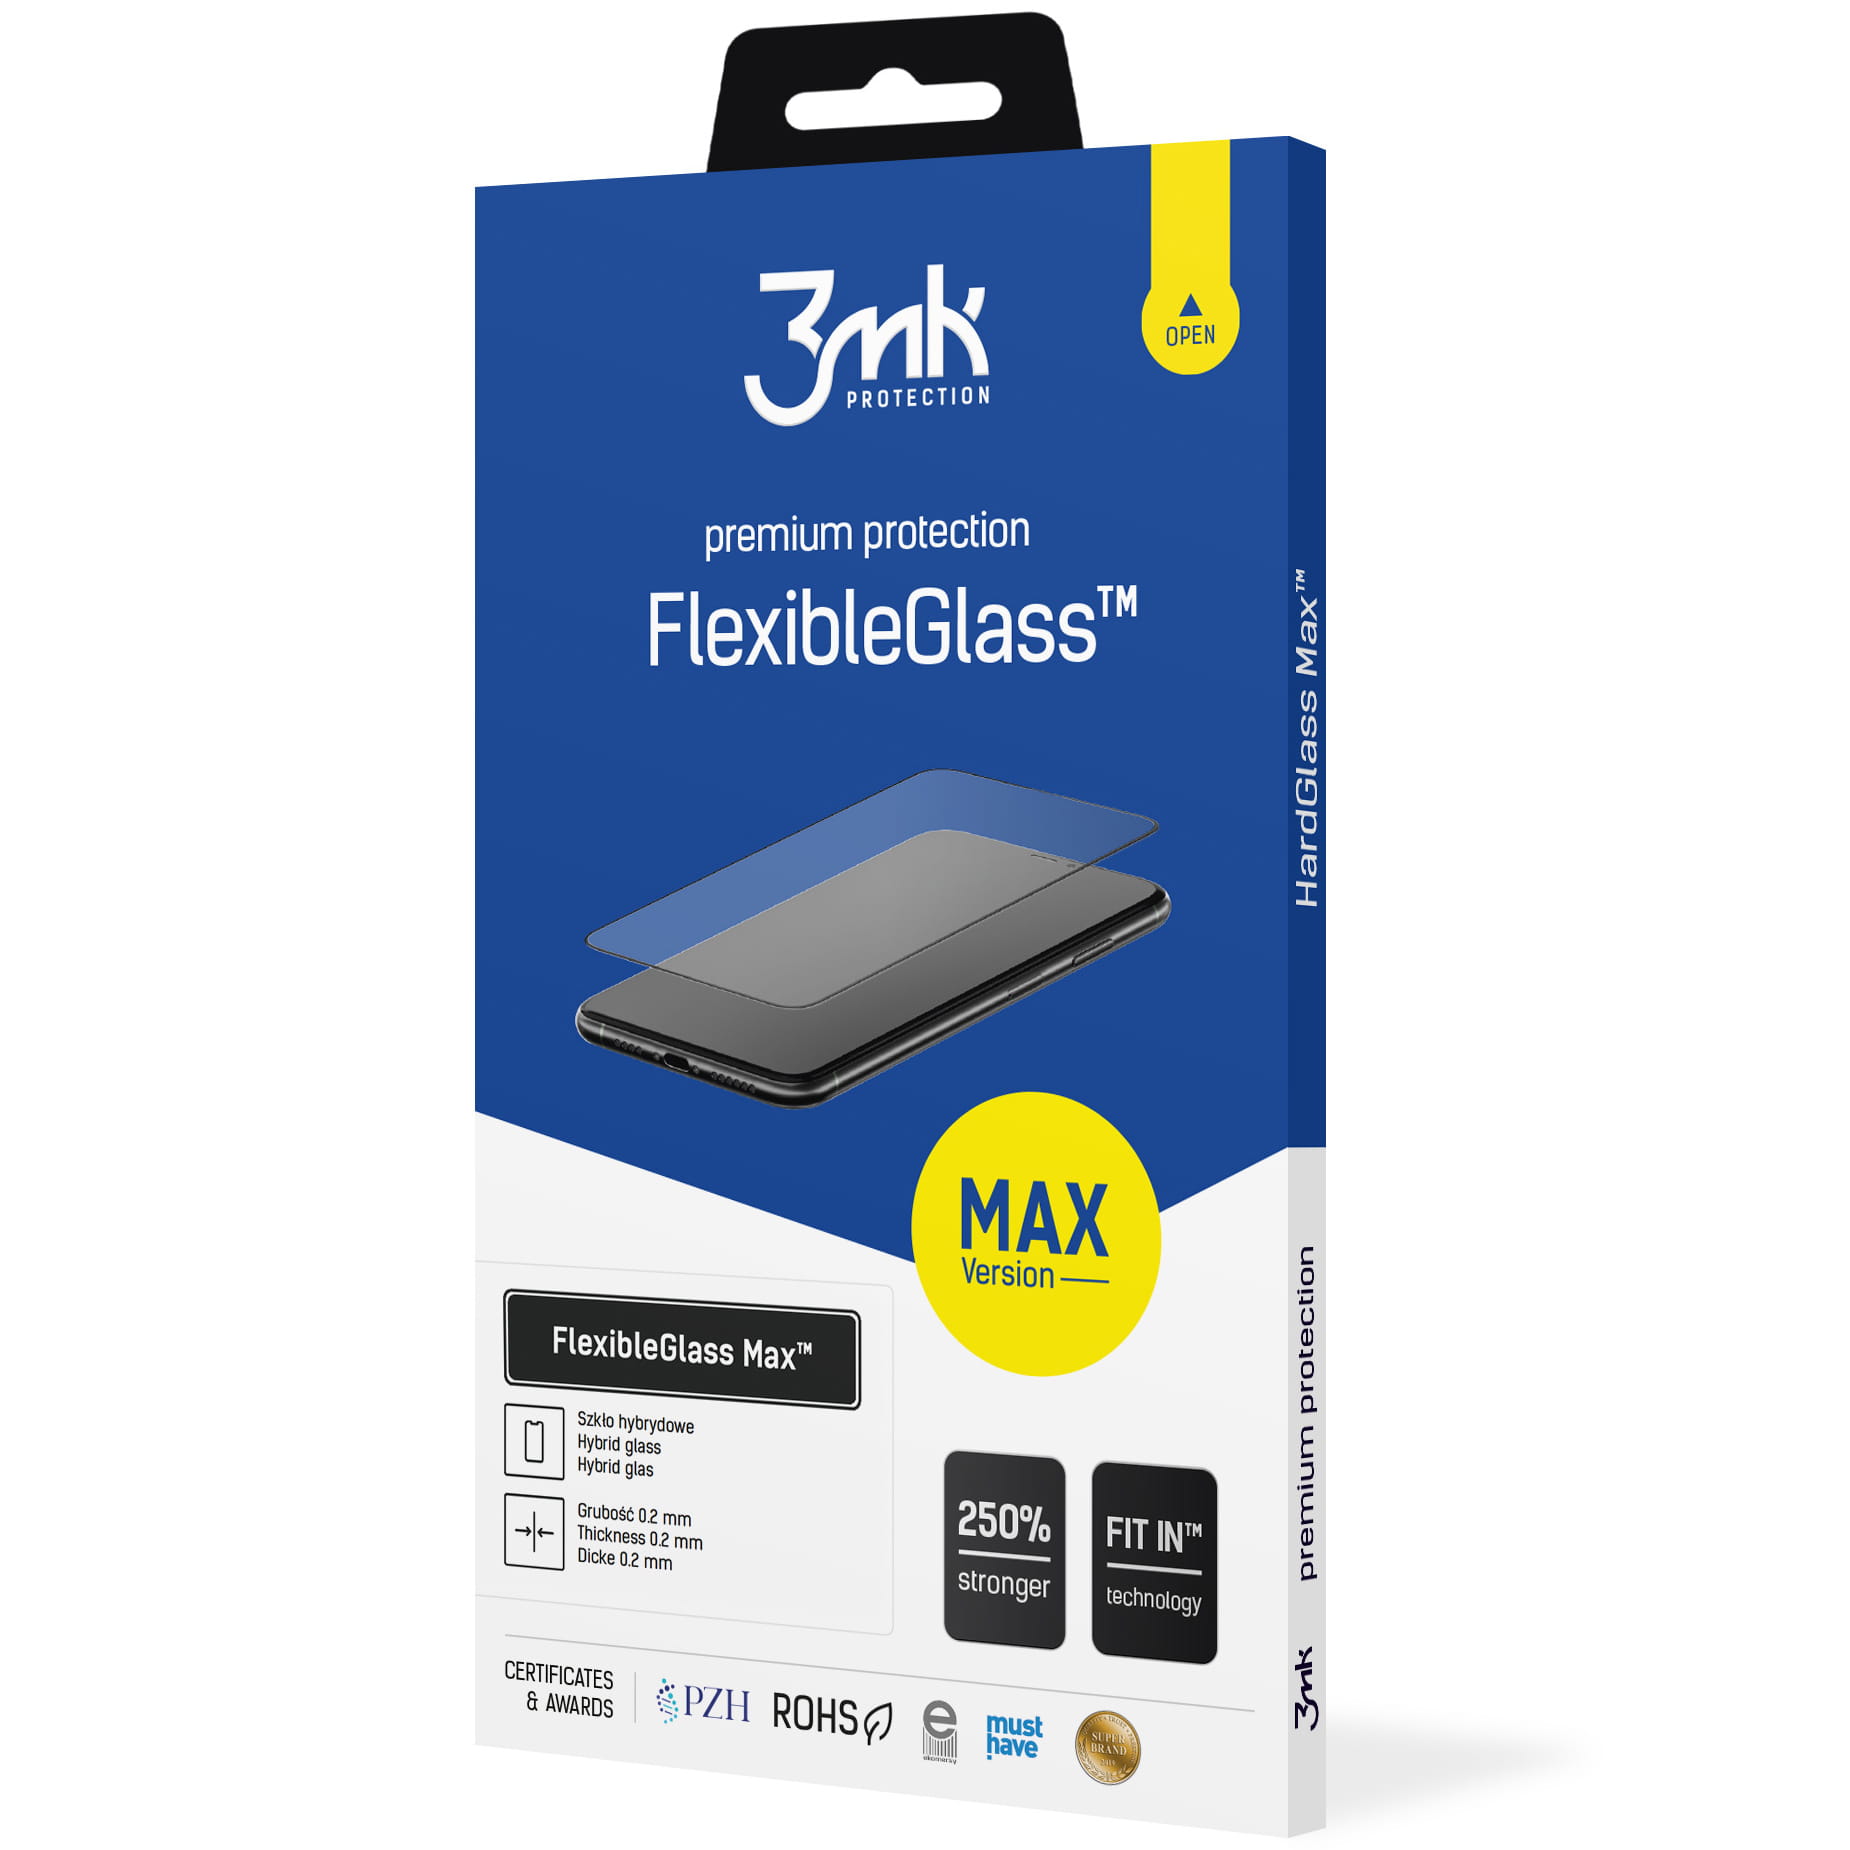 Hybridglas 3mk Flexible Glass Max